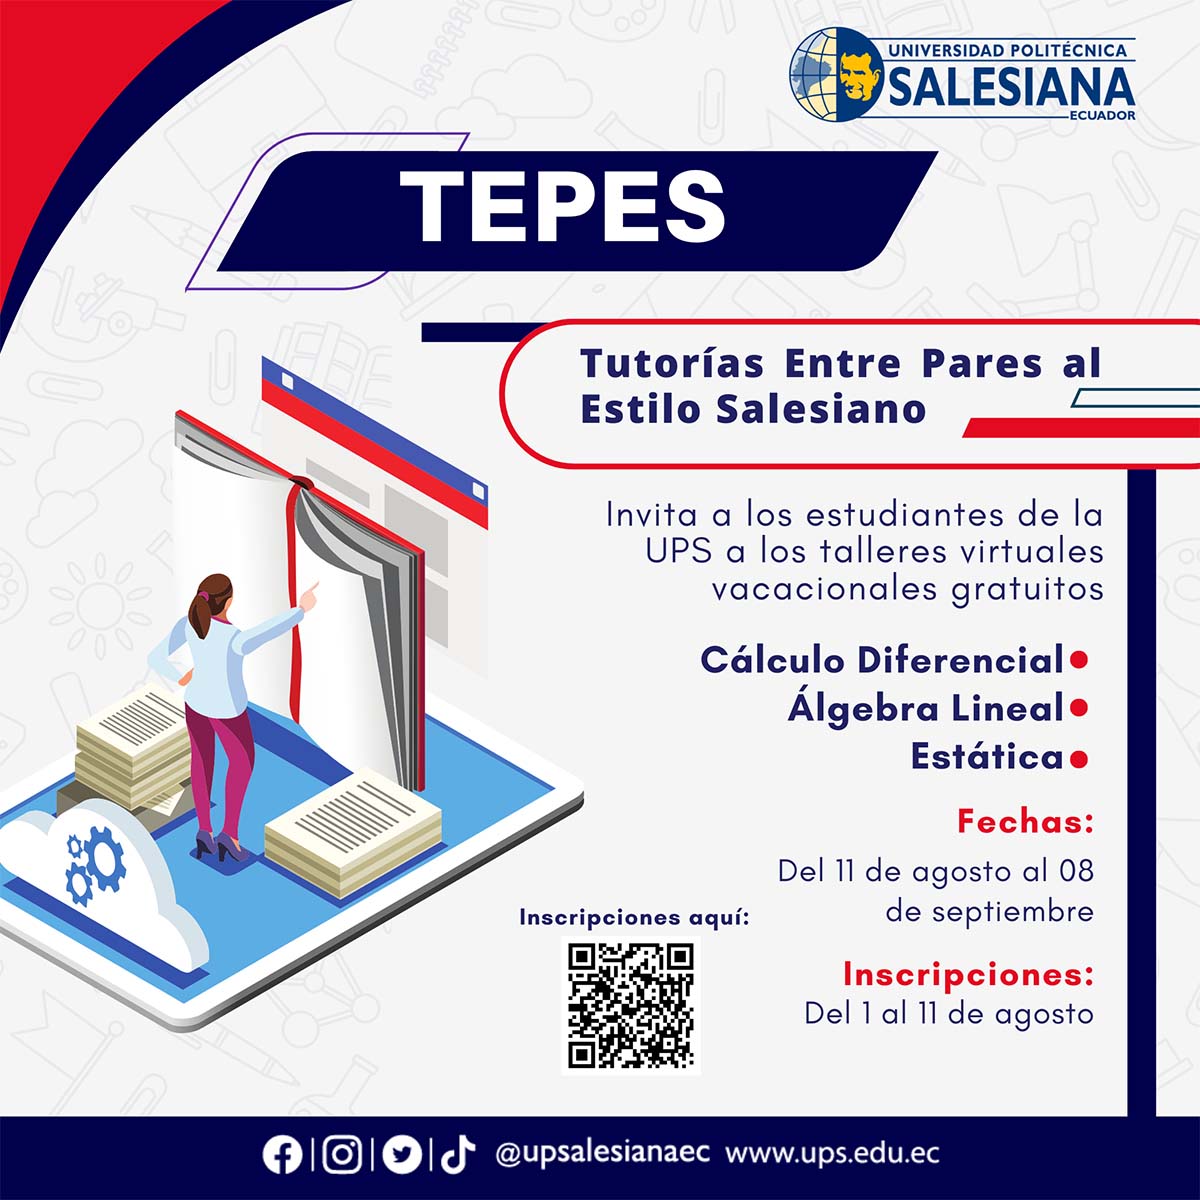 Afiche promocional de las tutorías entre pares al estilo salesiano - sede Quito